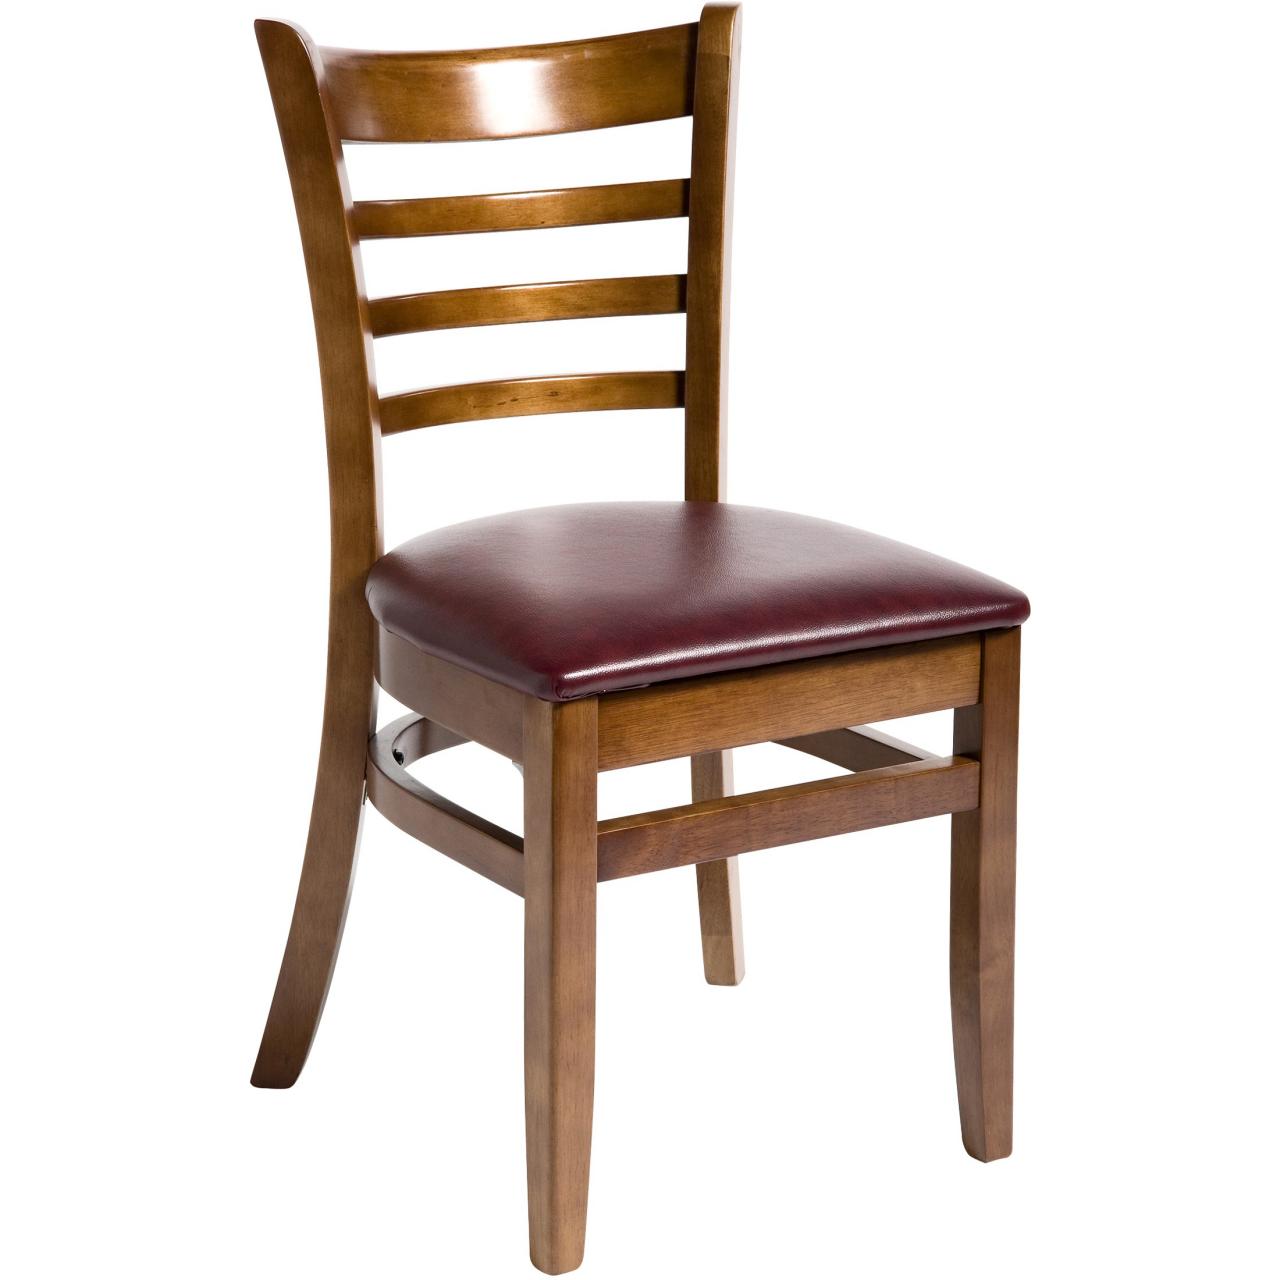 Wooden chair. Стул деревянный. Красивые деревянные стулья. Стул дерево. Современные деревянные стулья.